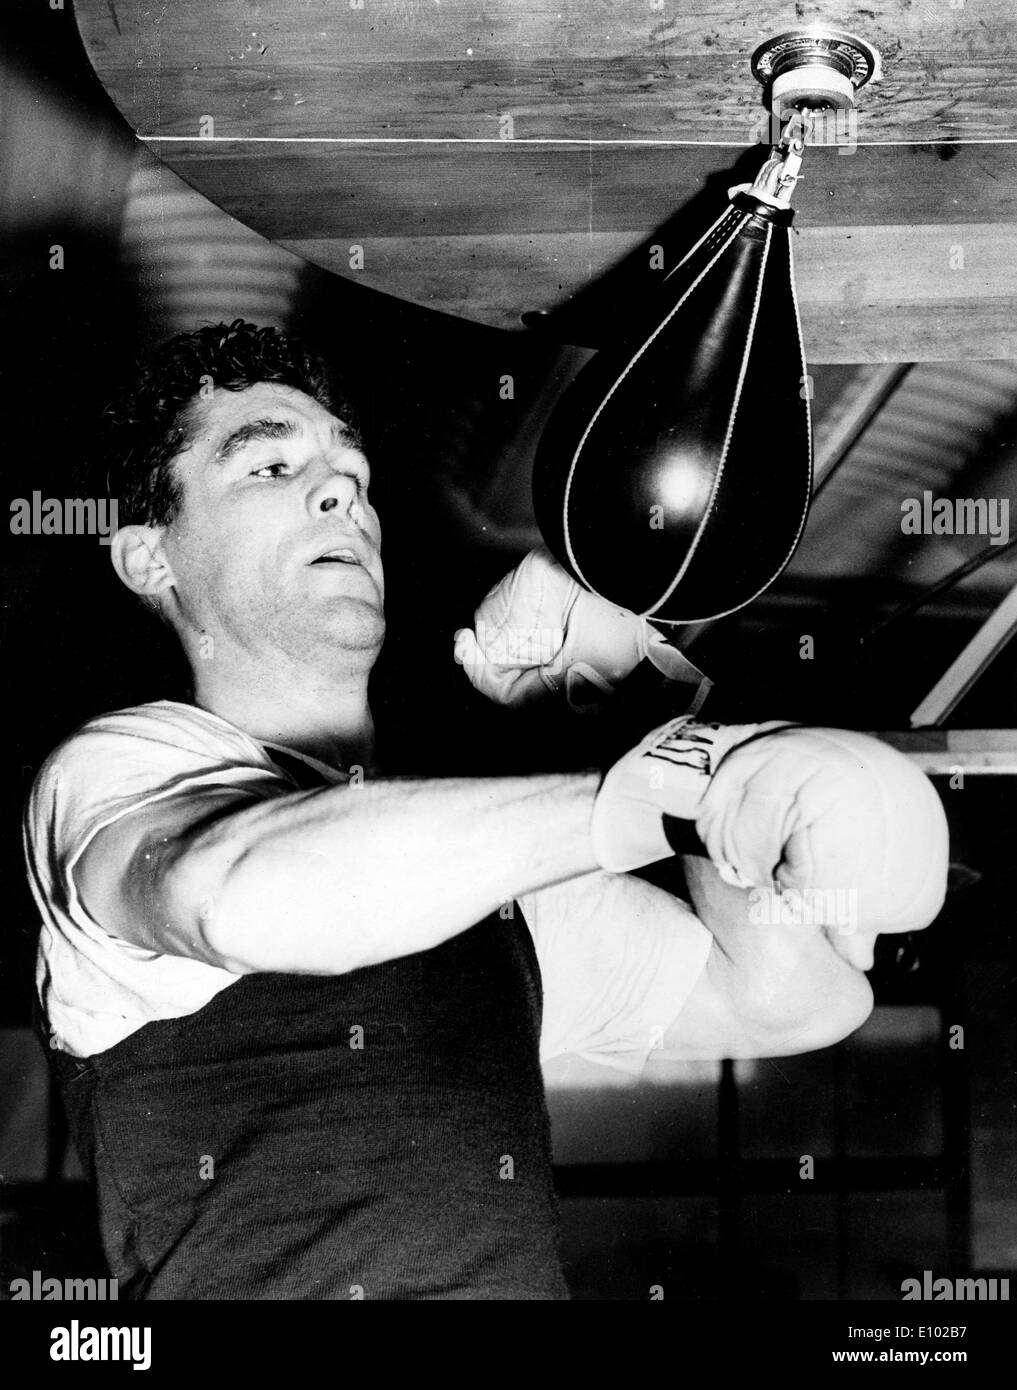 Walter Cartier (1922 - 1995) était un boxeur professionnel tourné acteur, originaire de la Bronx à New York Banque D'Images